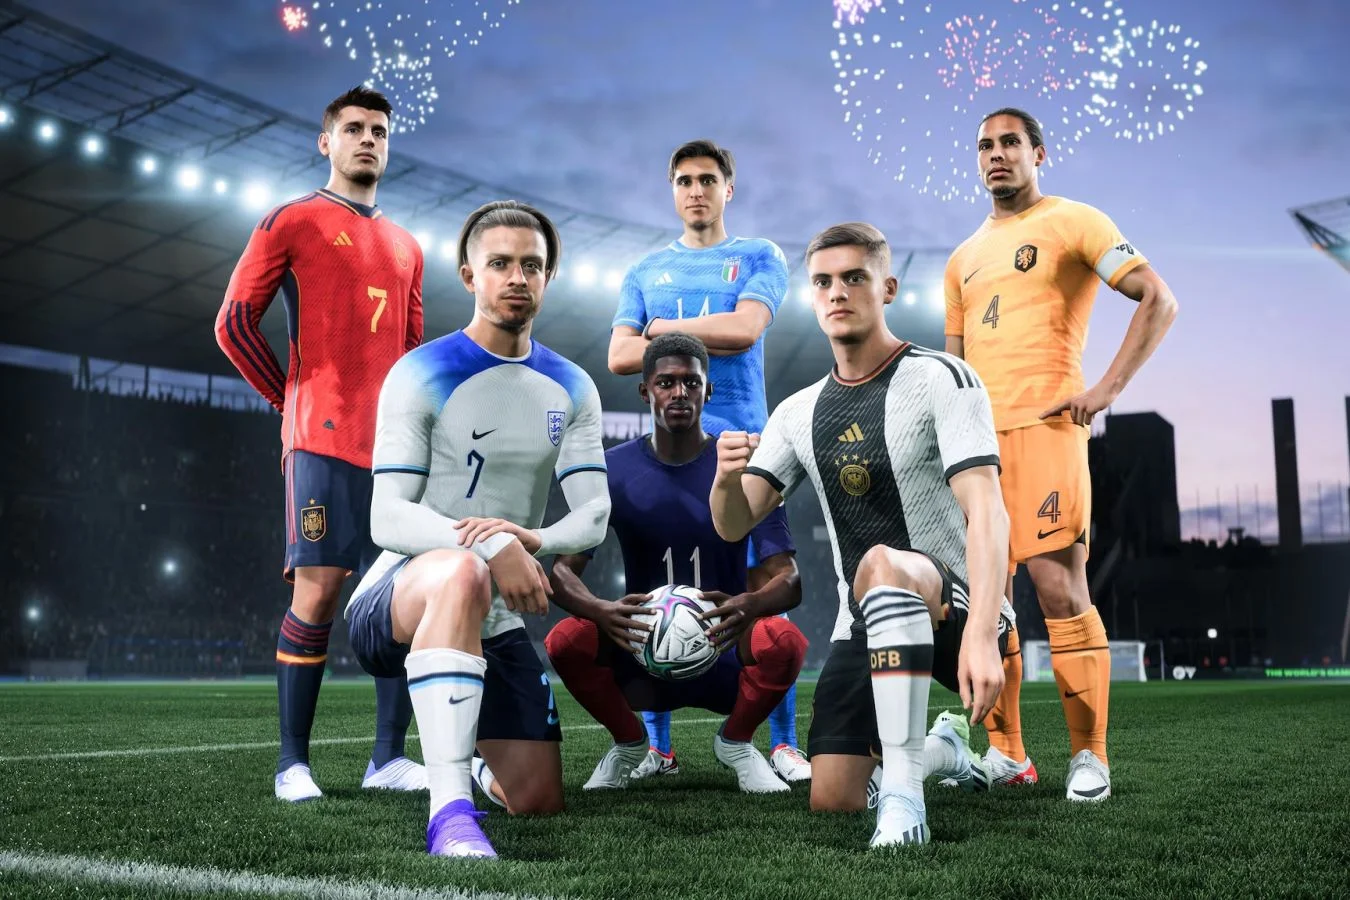 Для EA Sports FC 24 выходит апдейт в честь Чемпионата Европы 2024